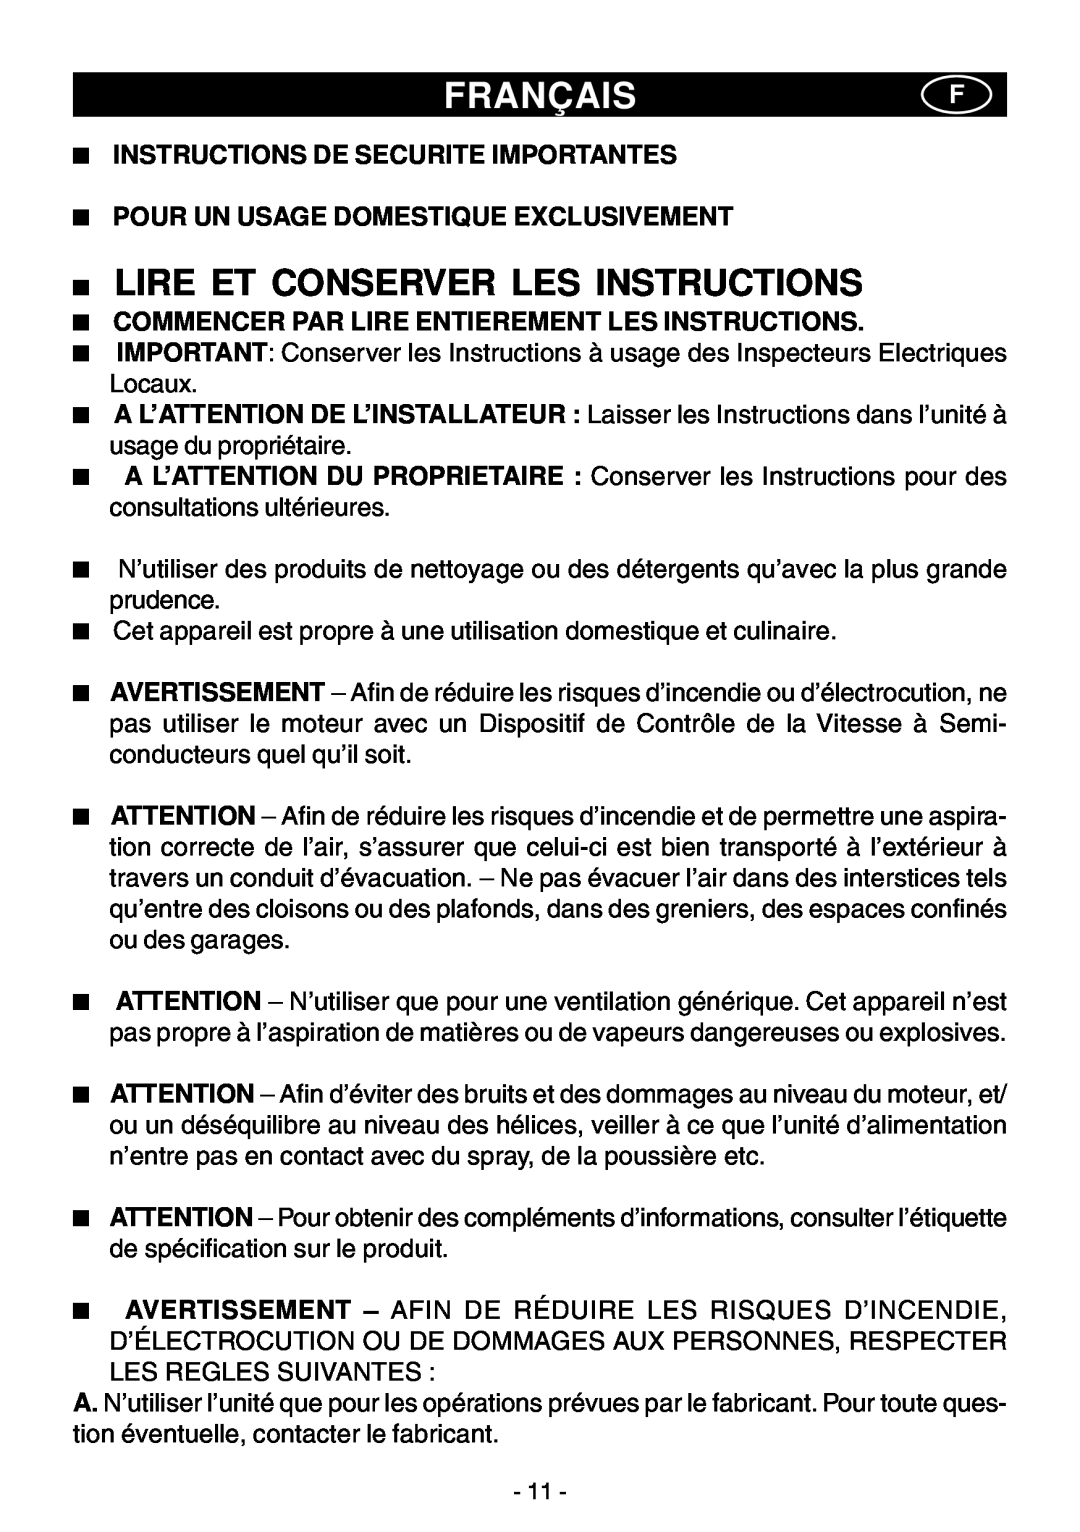 Elitair ZN-36 manual Françaisf, Lire Et Conserver Les Instructions, Instructions De Securite Importantes 